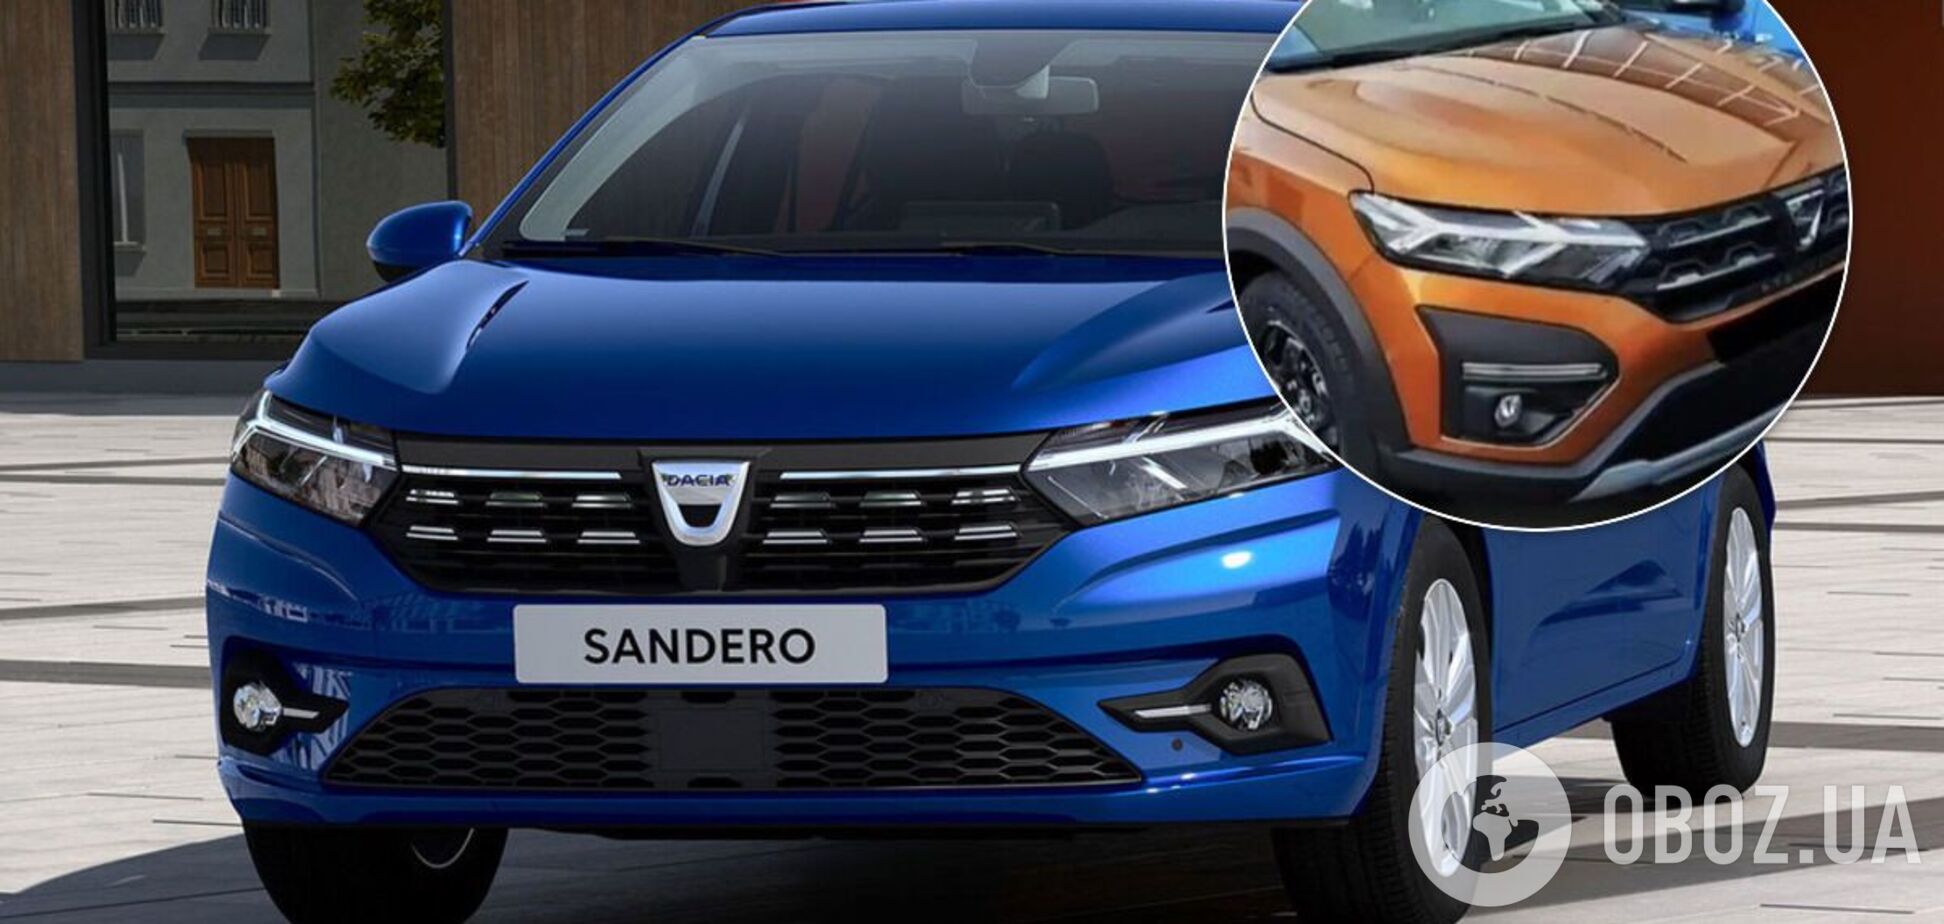 Как выглядит новый Renault Sandero вживую: опубликовано фото